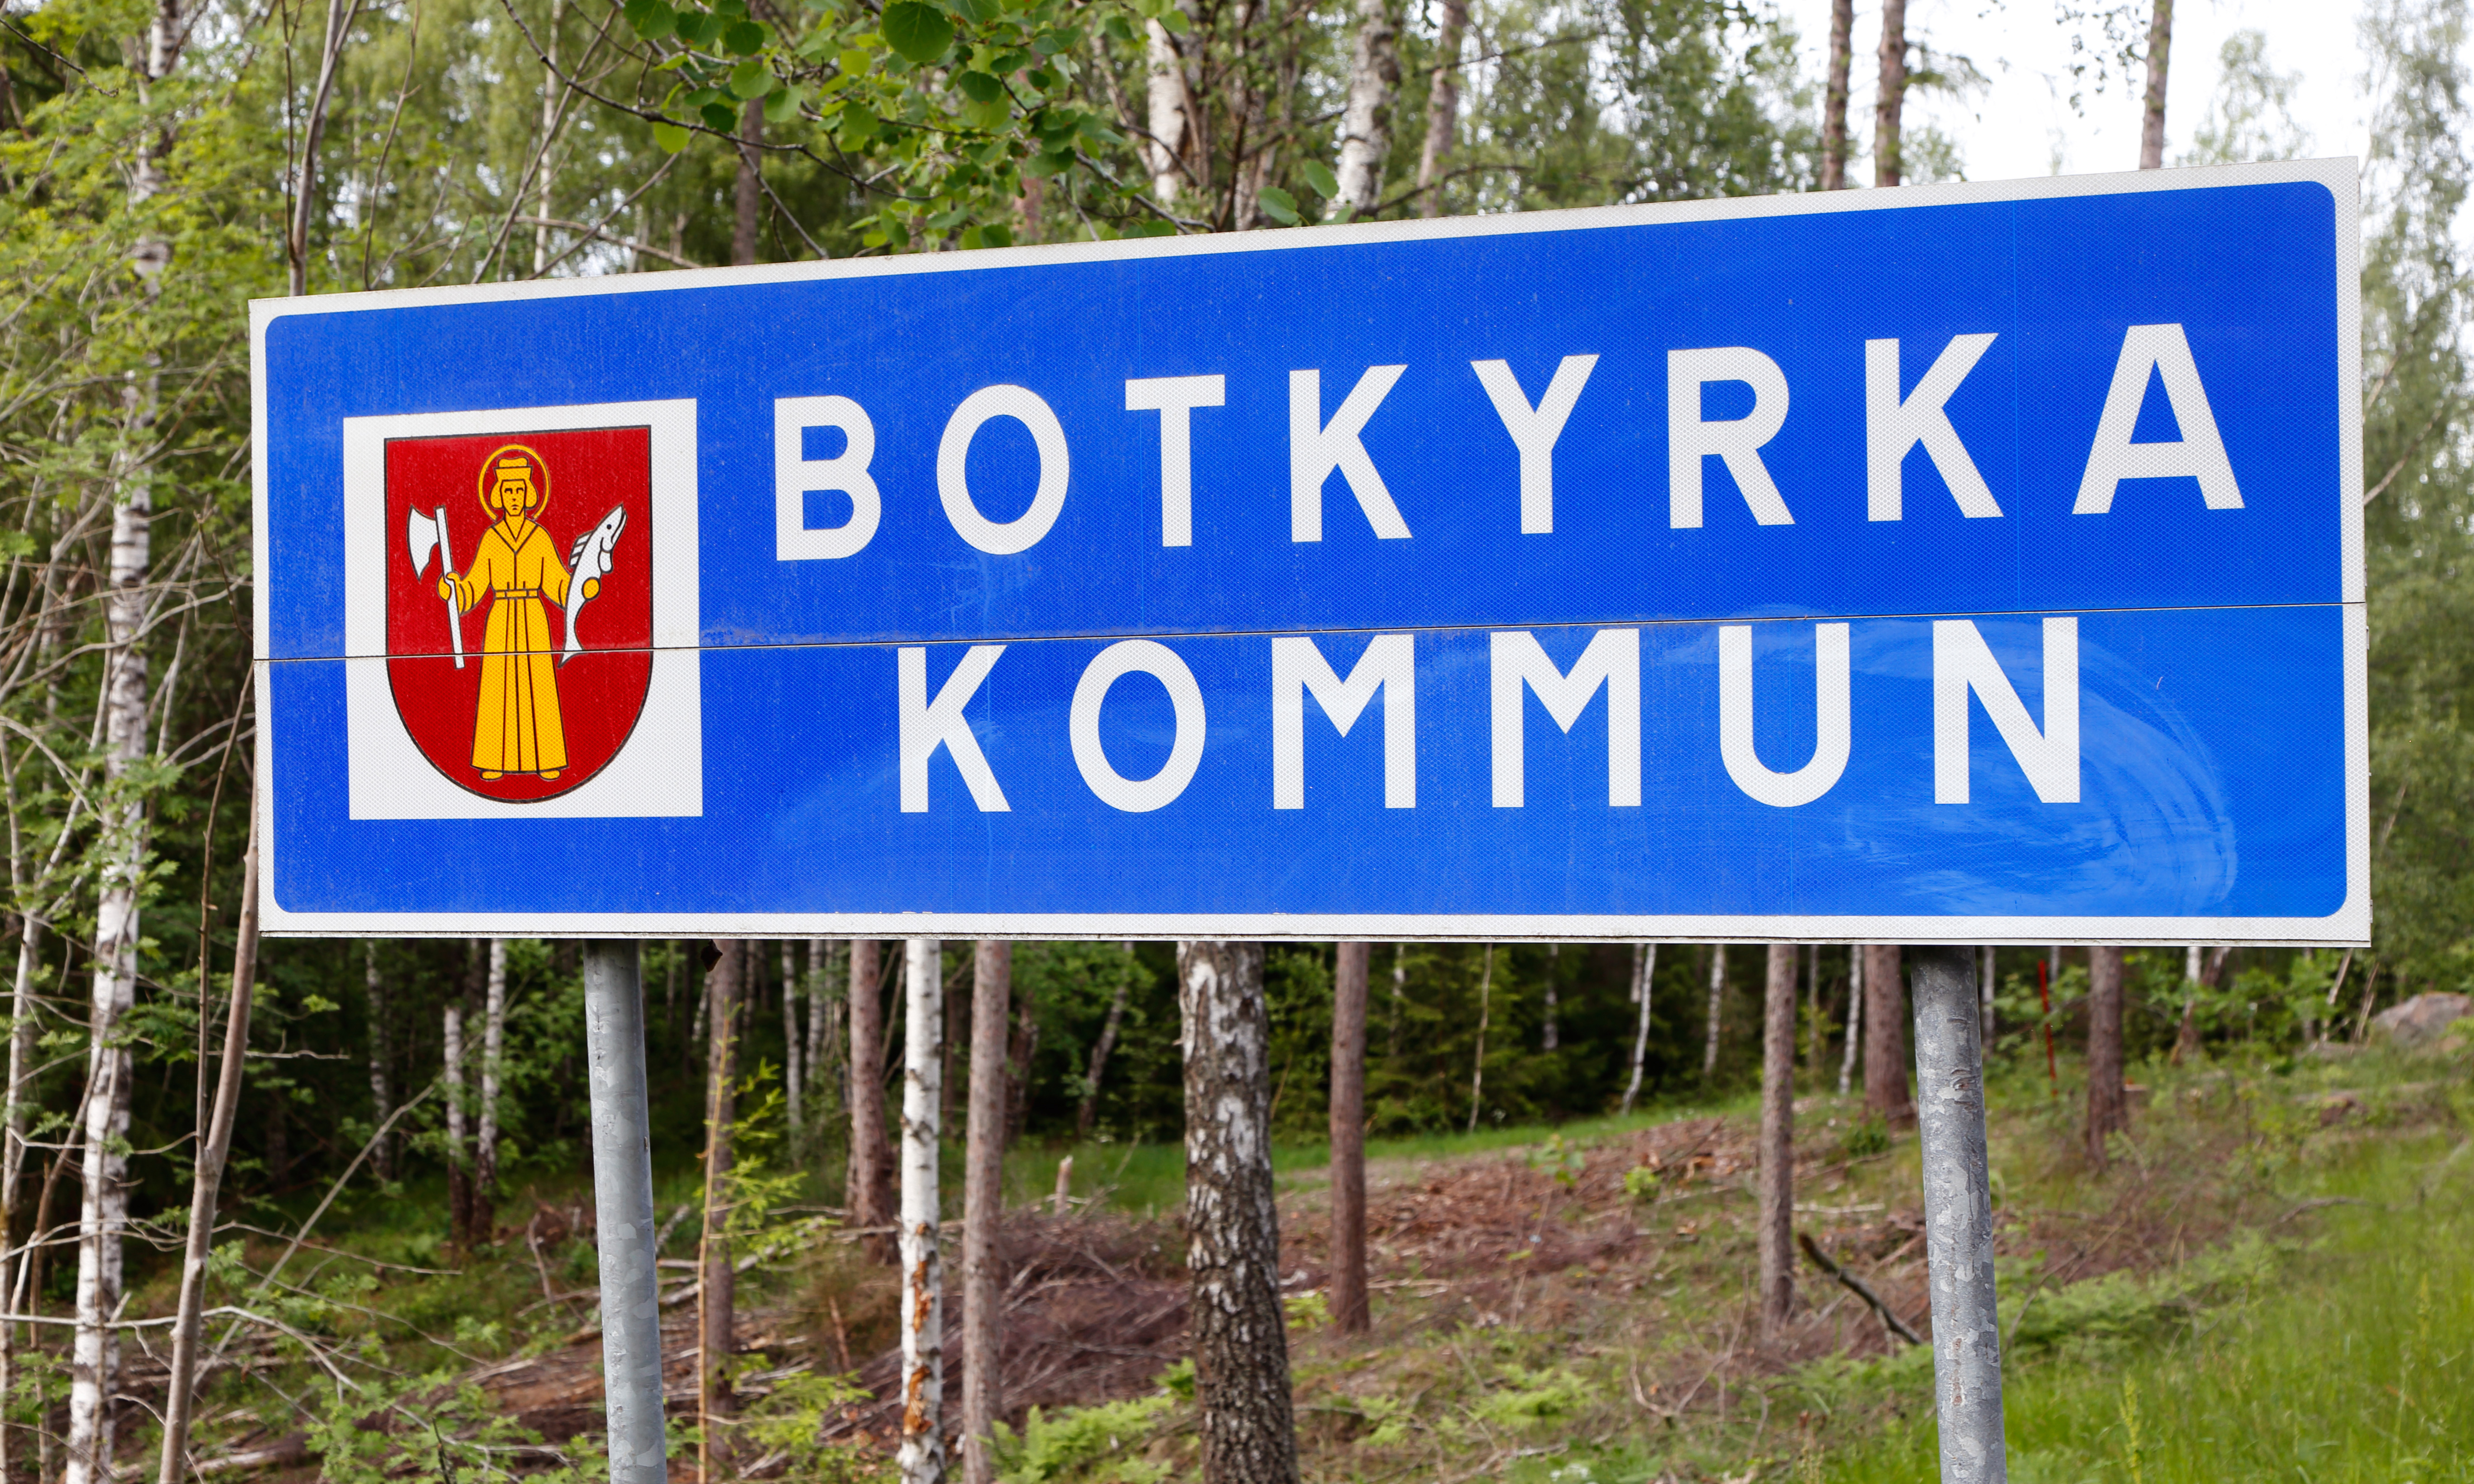 SIDA får 500 årsarbetskrafter flyttade från Östermalm till Botkyrka. "Det är också viktigt att staten ökar sin närvaro i storstädernas ytterområden", skriver vice statsminister Isabella Lövin, MP, i ett pressmeddelande.